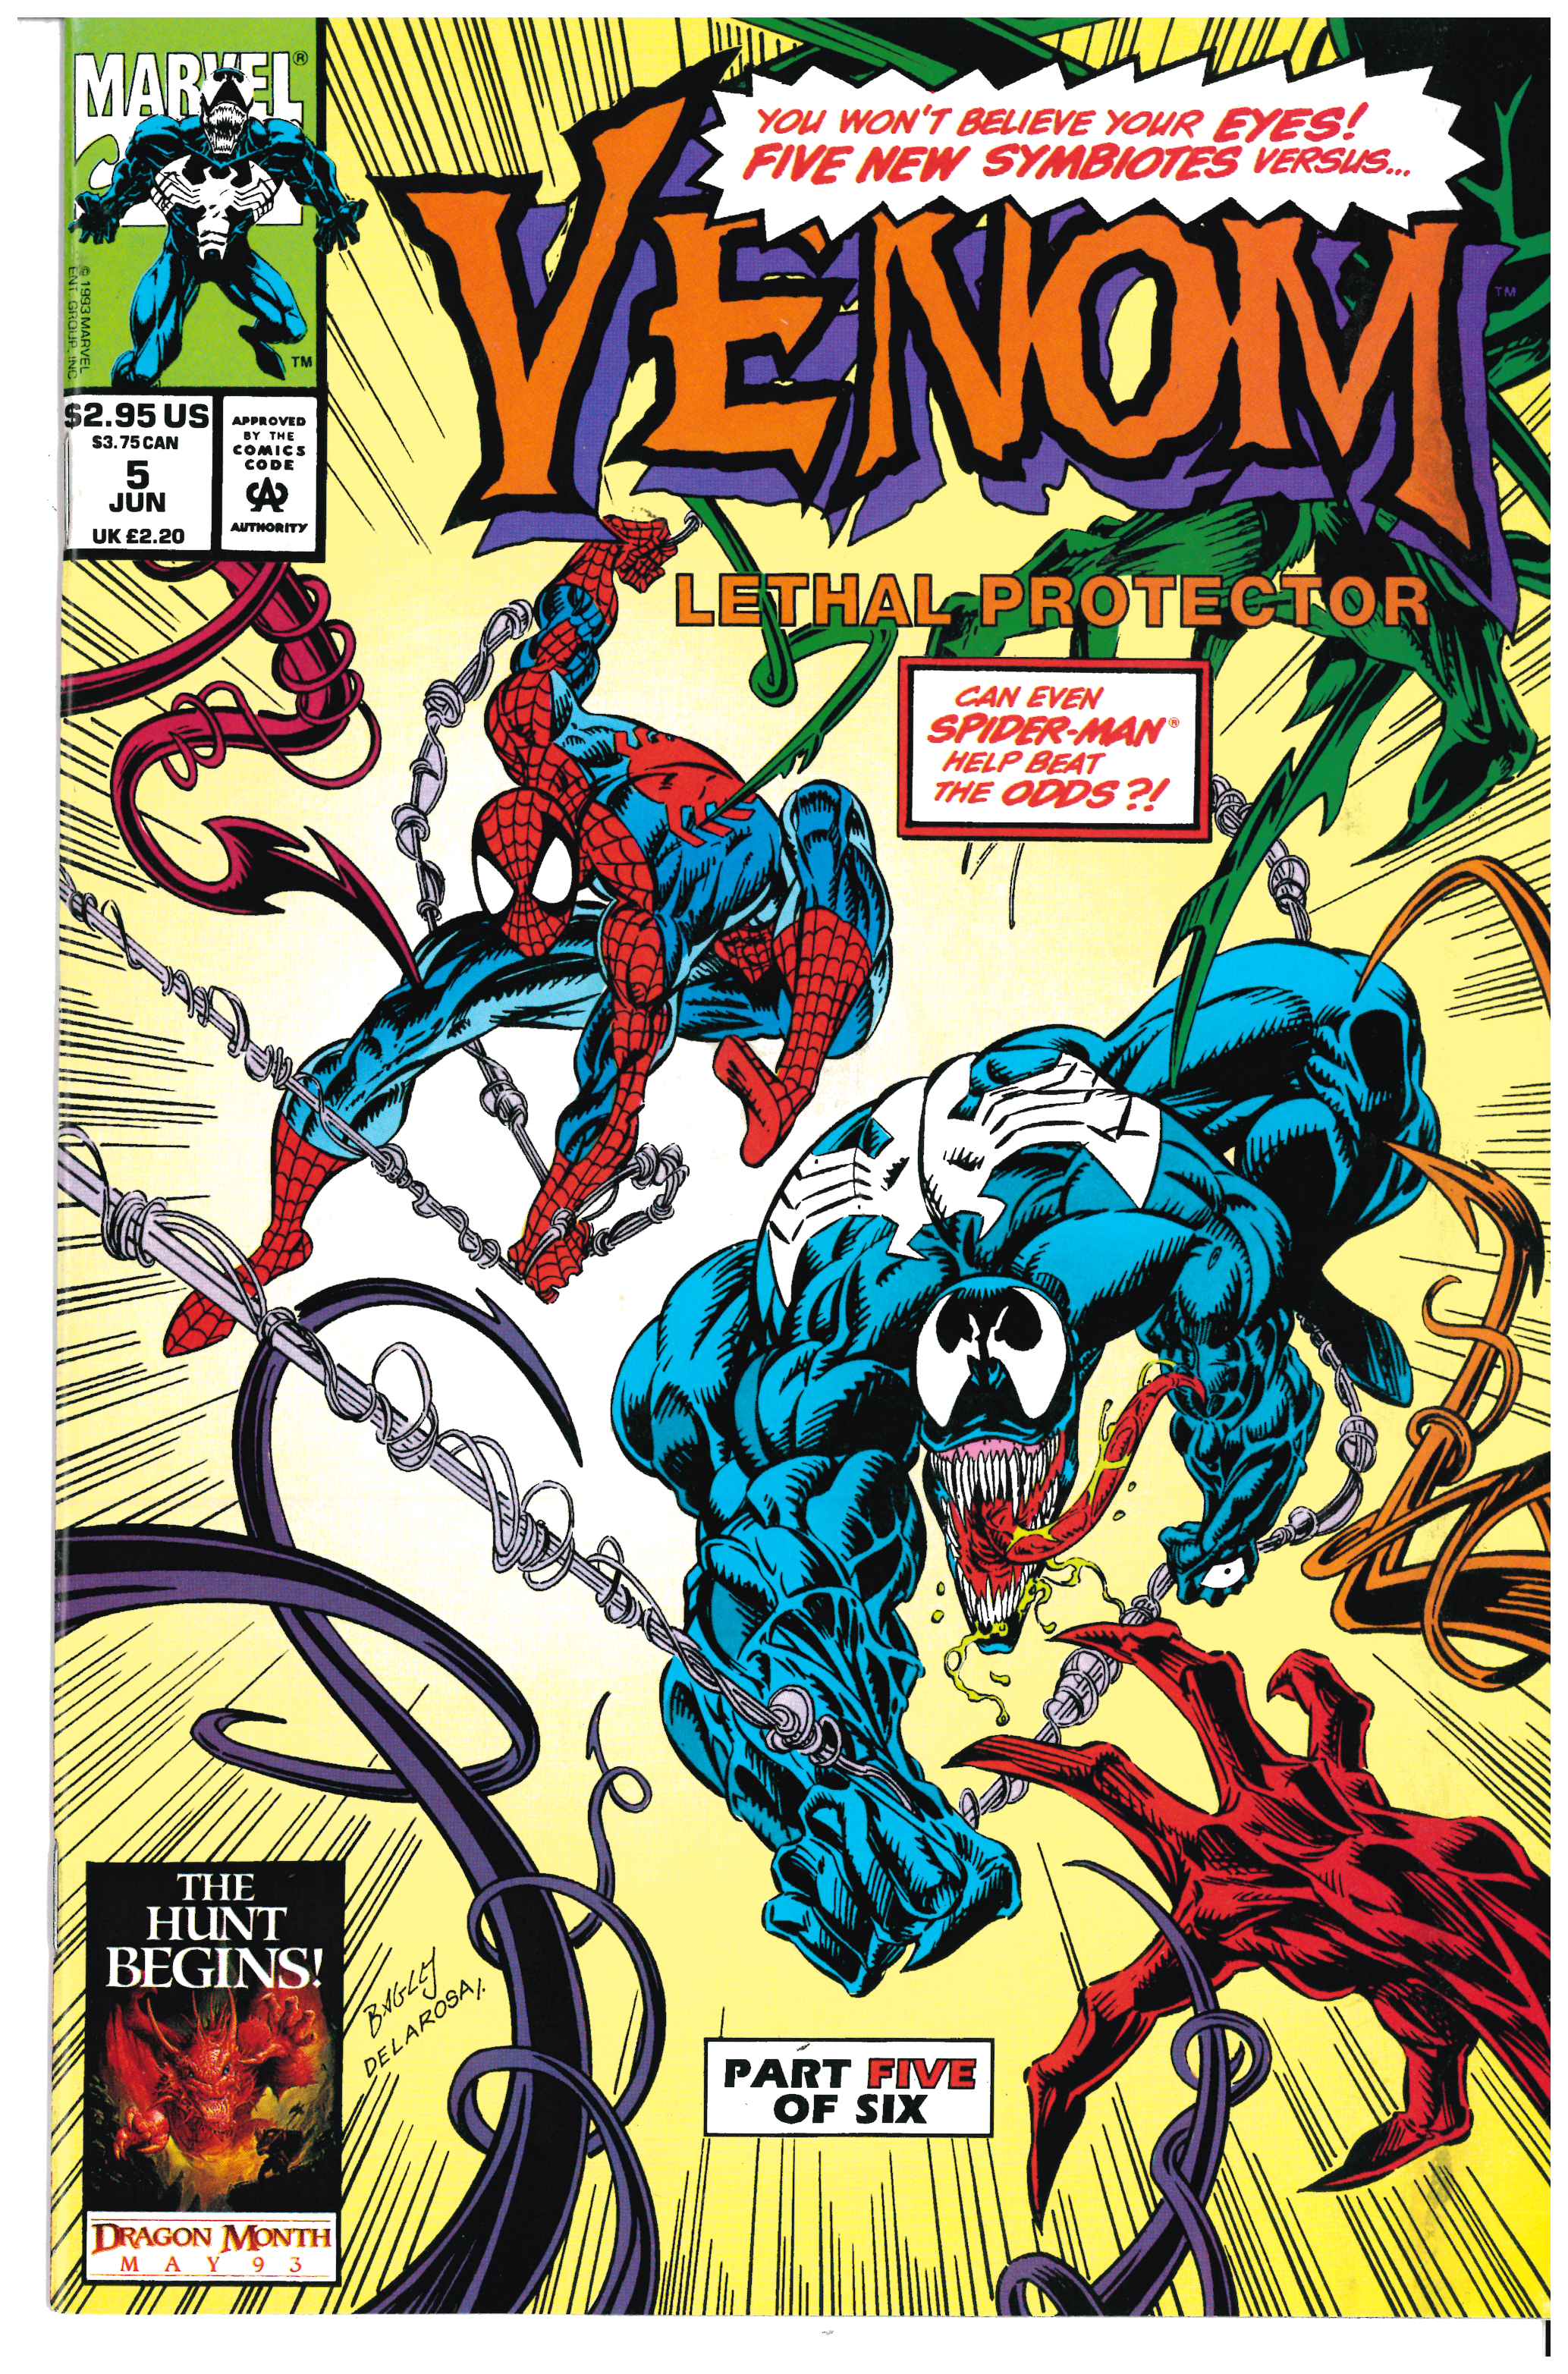 Venom: Lethal Protector #5